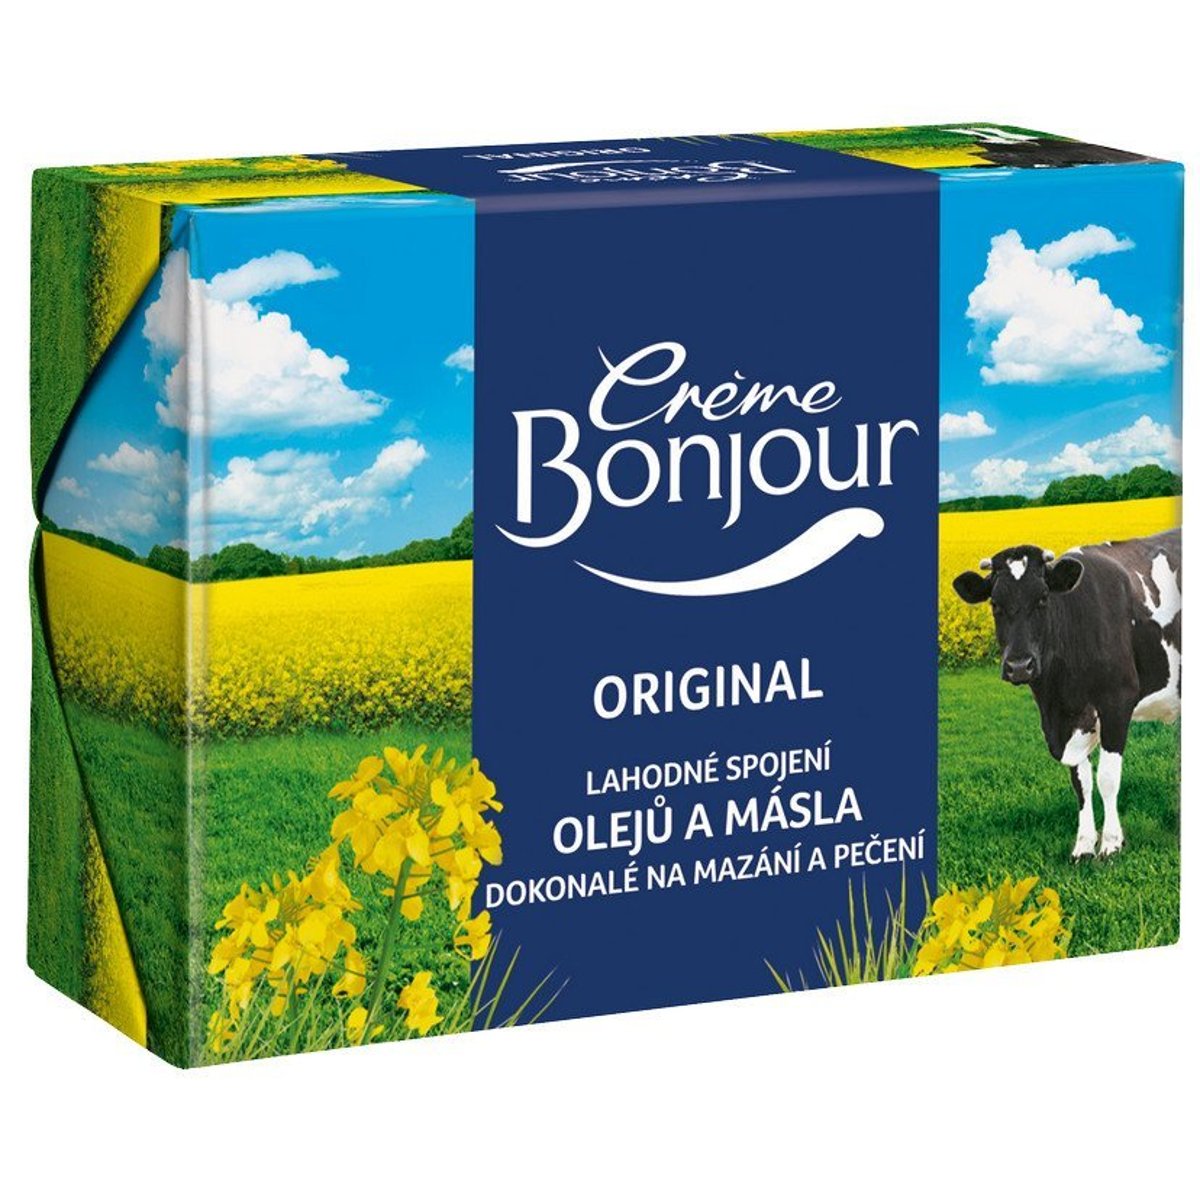 Crème Bonjour Original